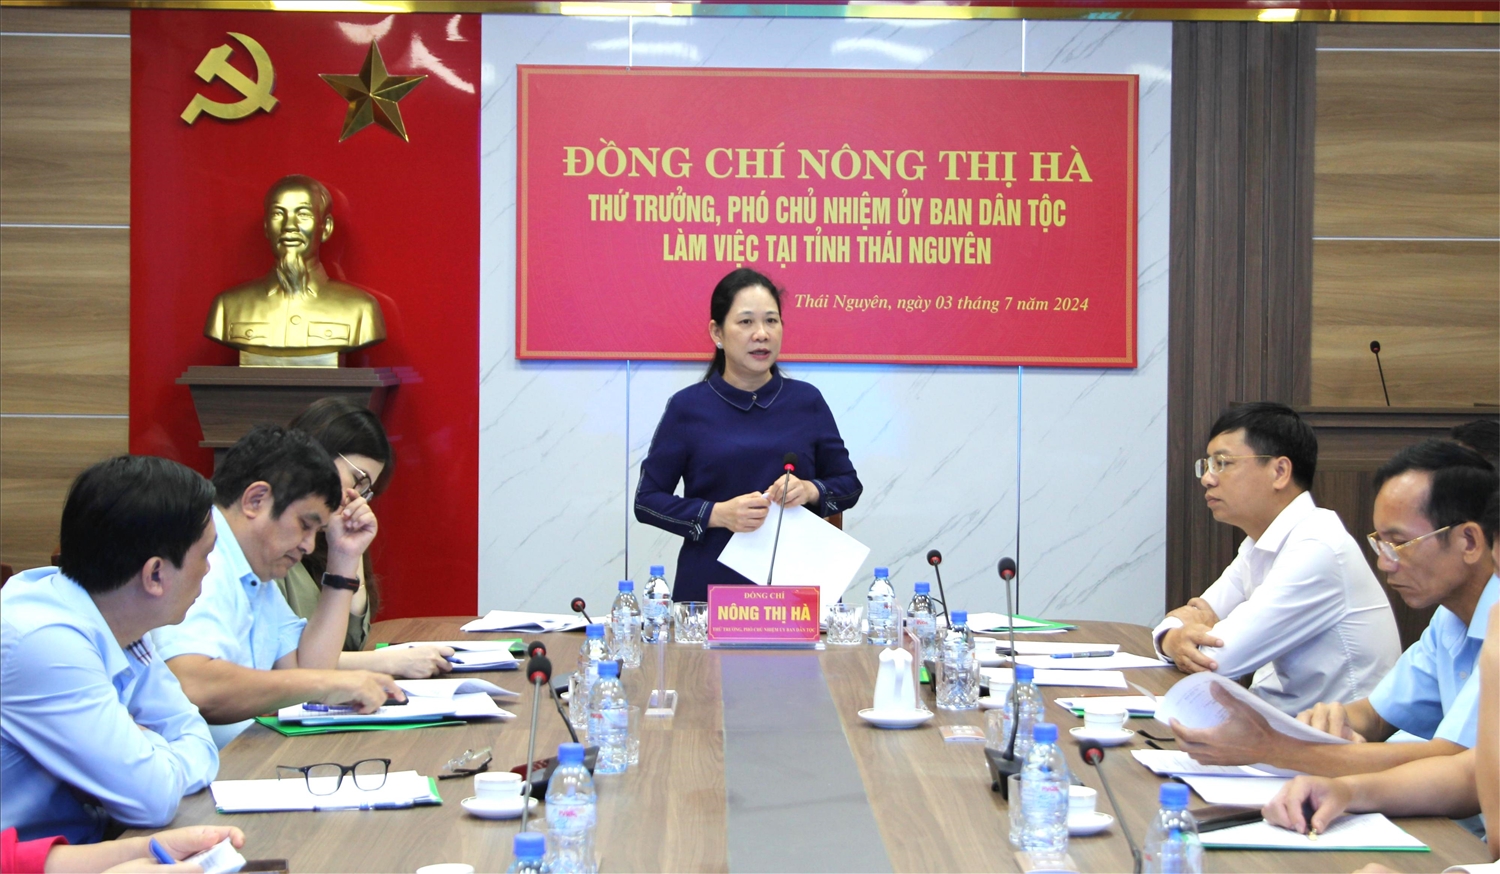 Thứ trưởng, Phó Chủ nhiệm Nông Thị Hà chủ trì buổi làm việc với Ban Dân tộc tỉnh Thái Nguyên